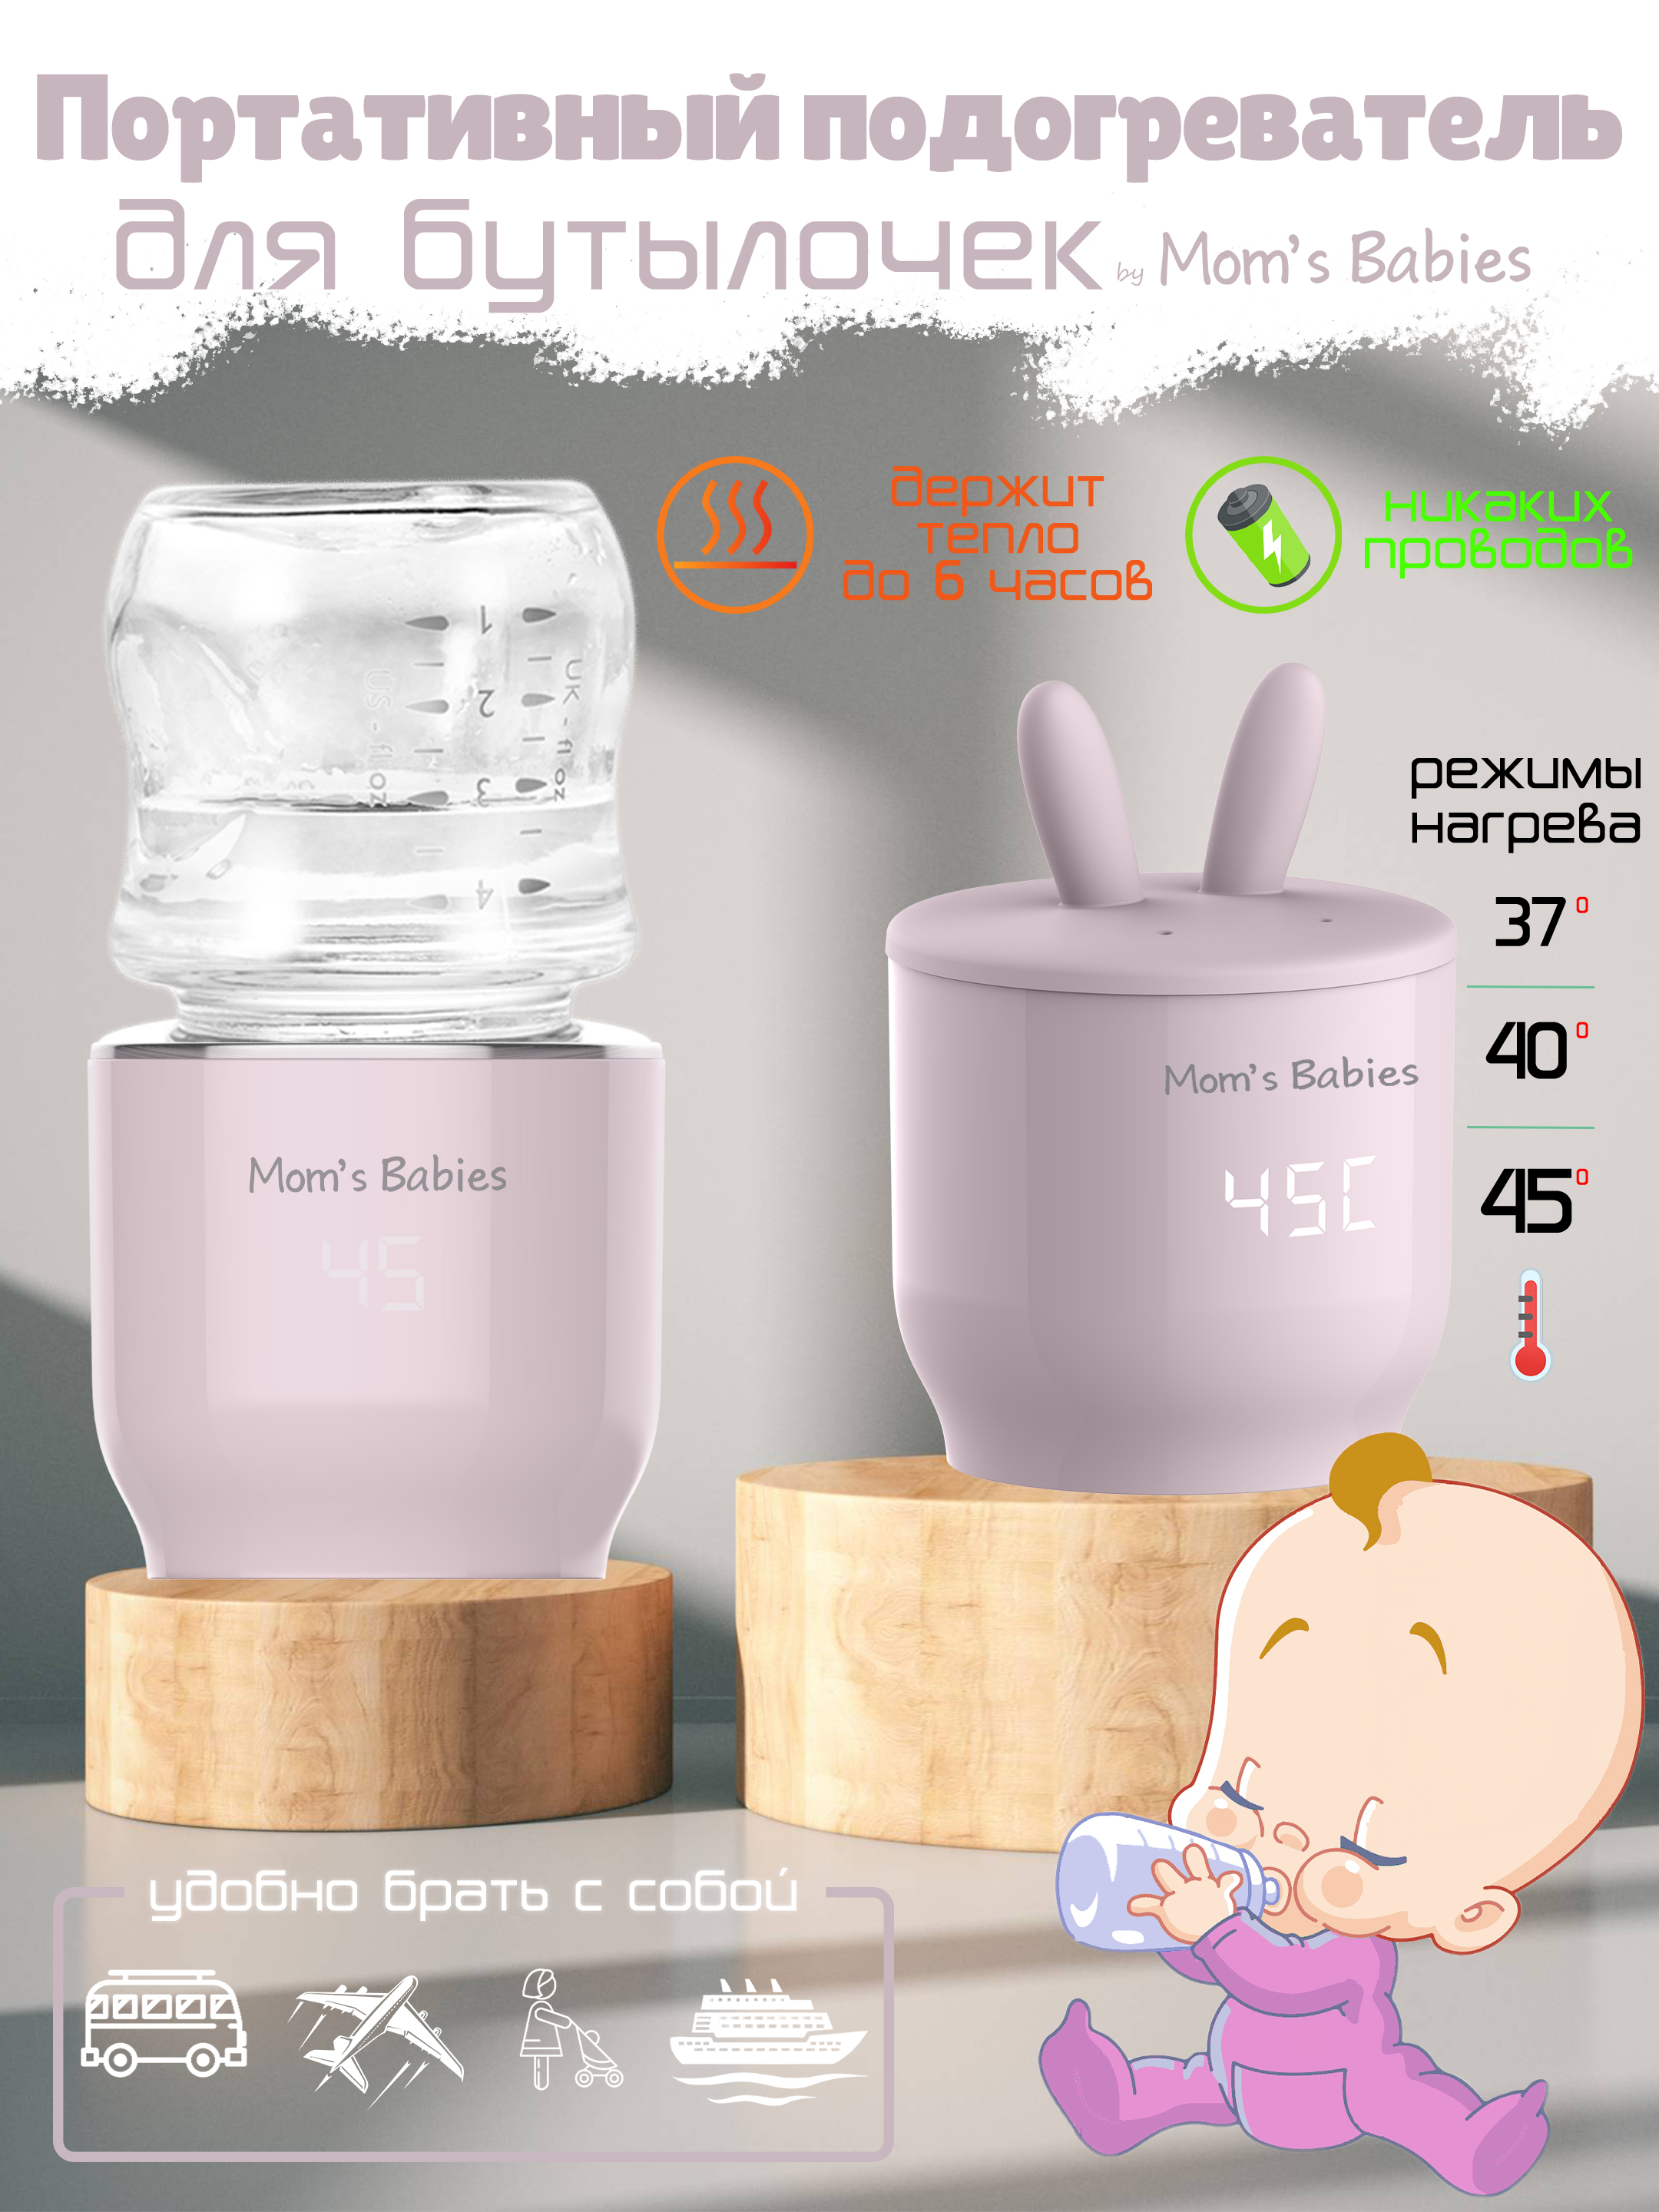 Портативный подогреватель Mom's Babies FS01 для бутылочек и детского питания розовый проводные наушники и портативный аккумулятор 5000 mah